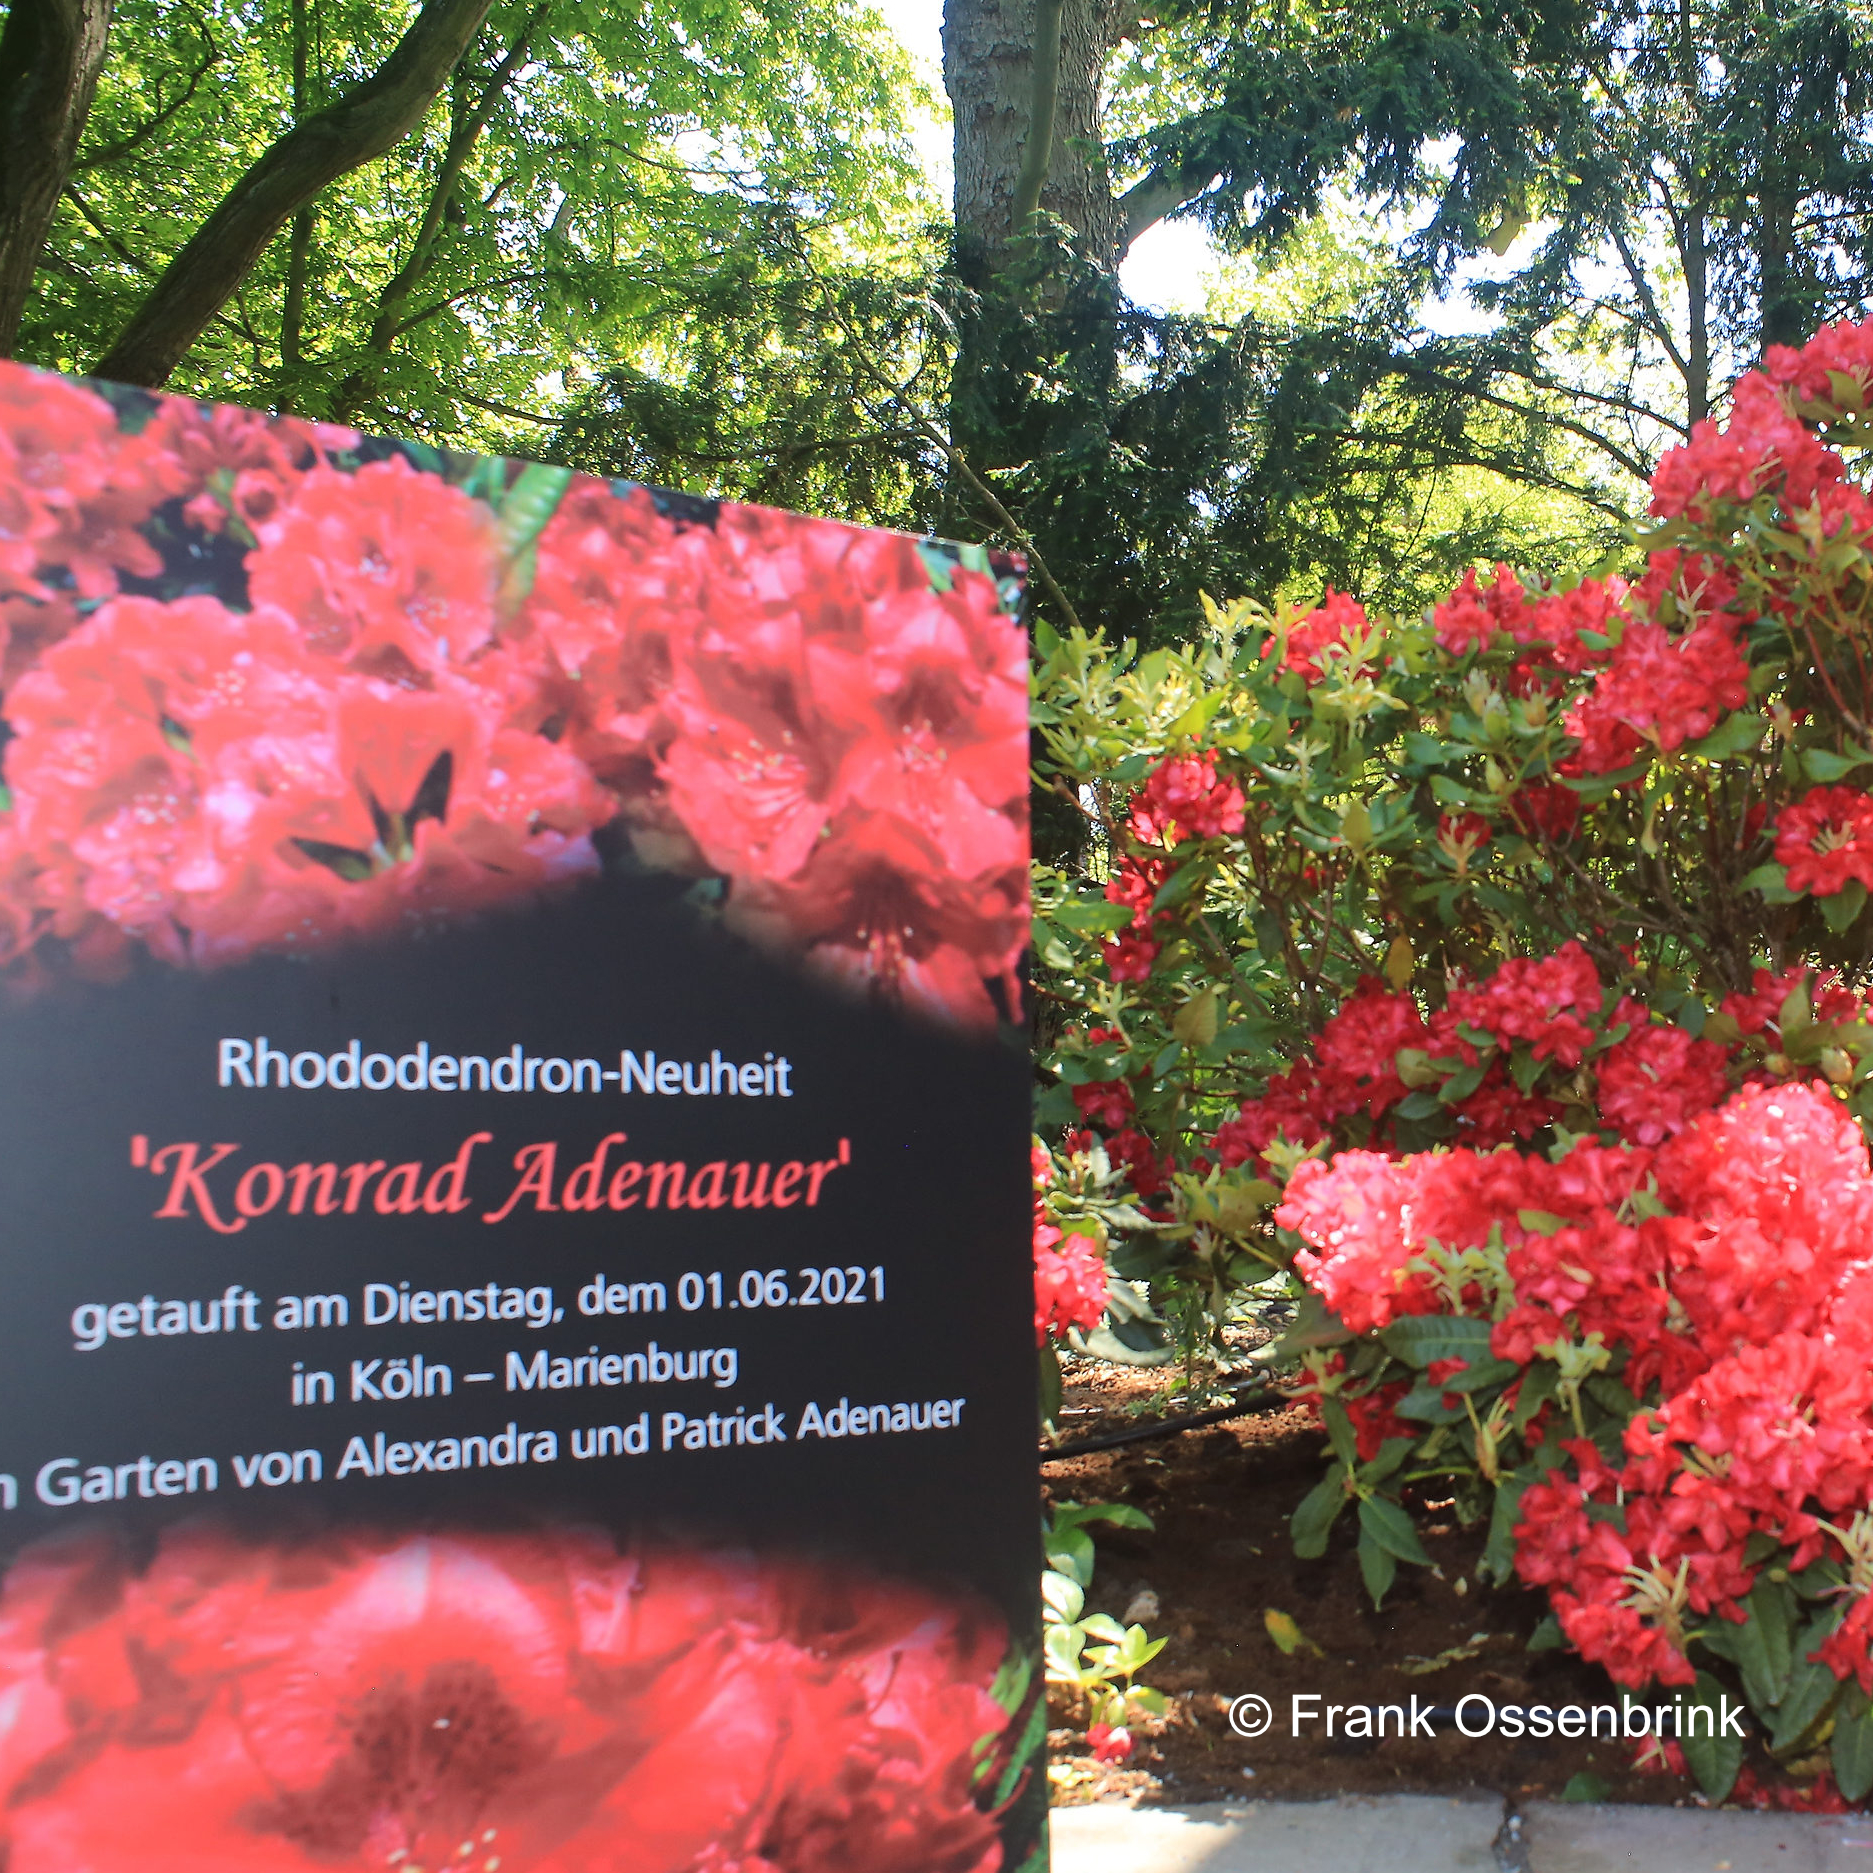 Rhododendrontaufe Konrad Adenauer